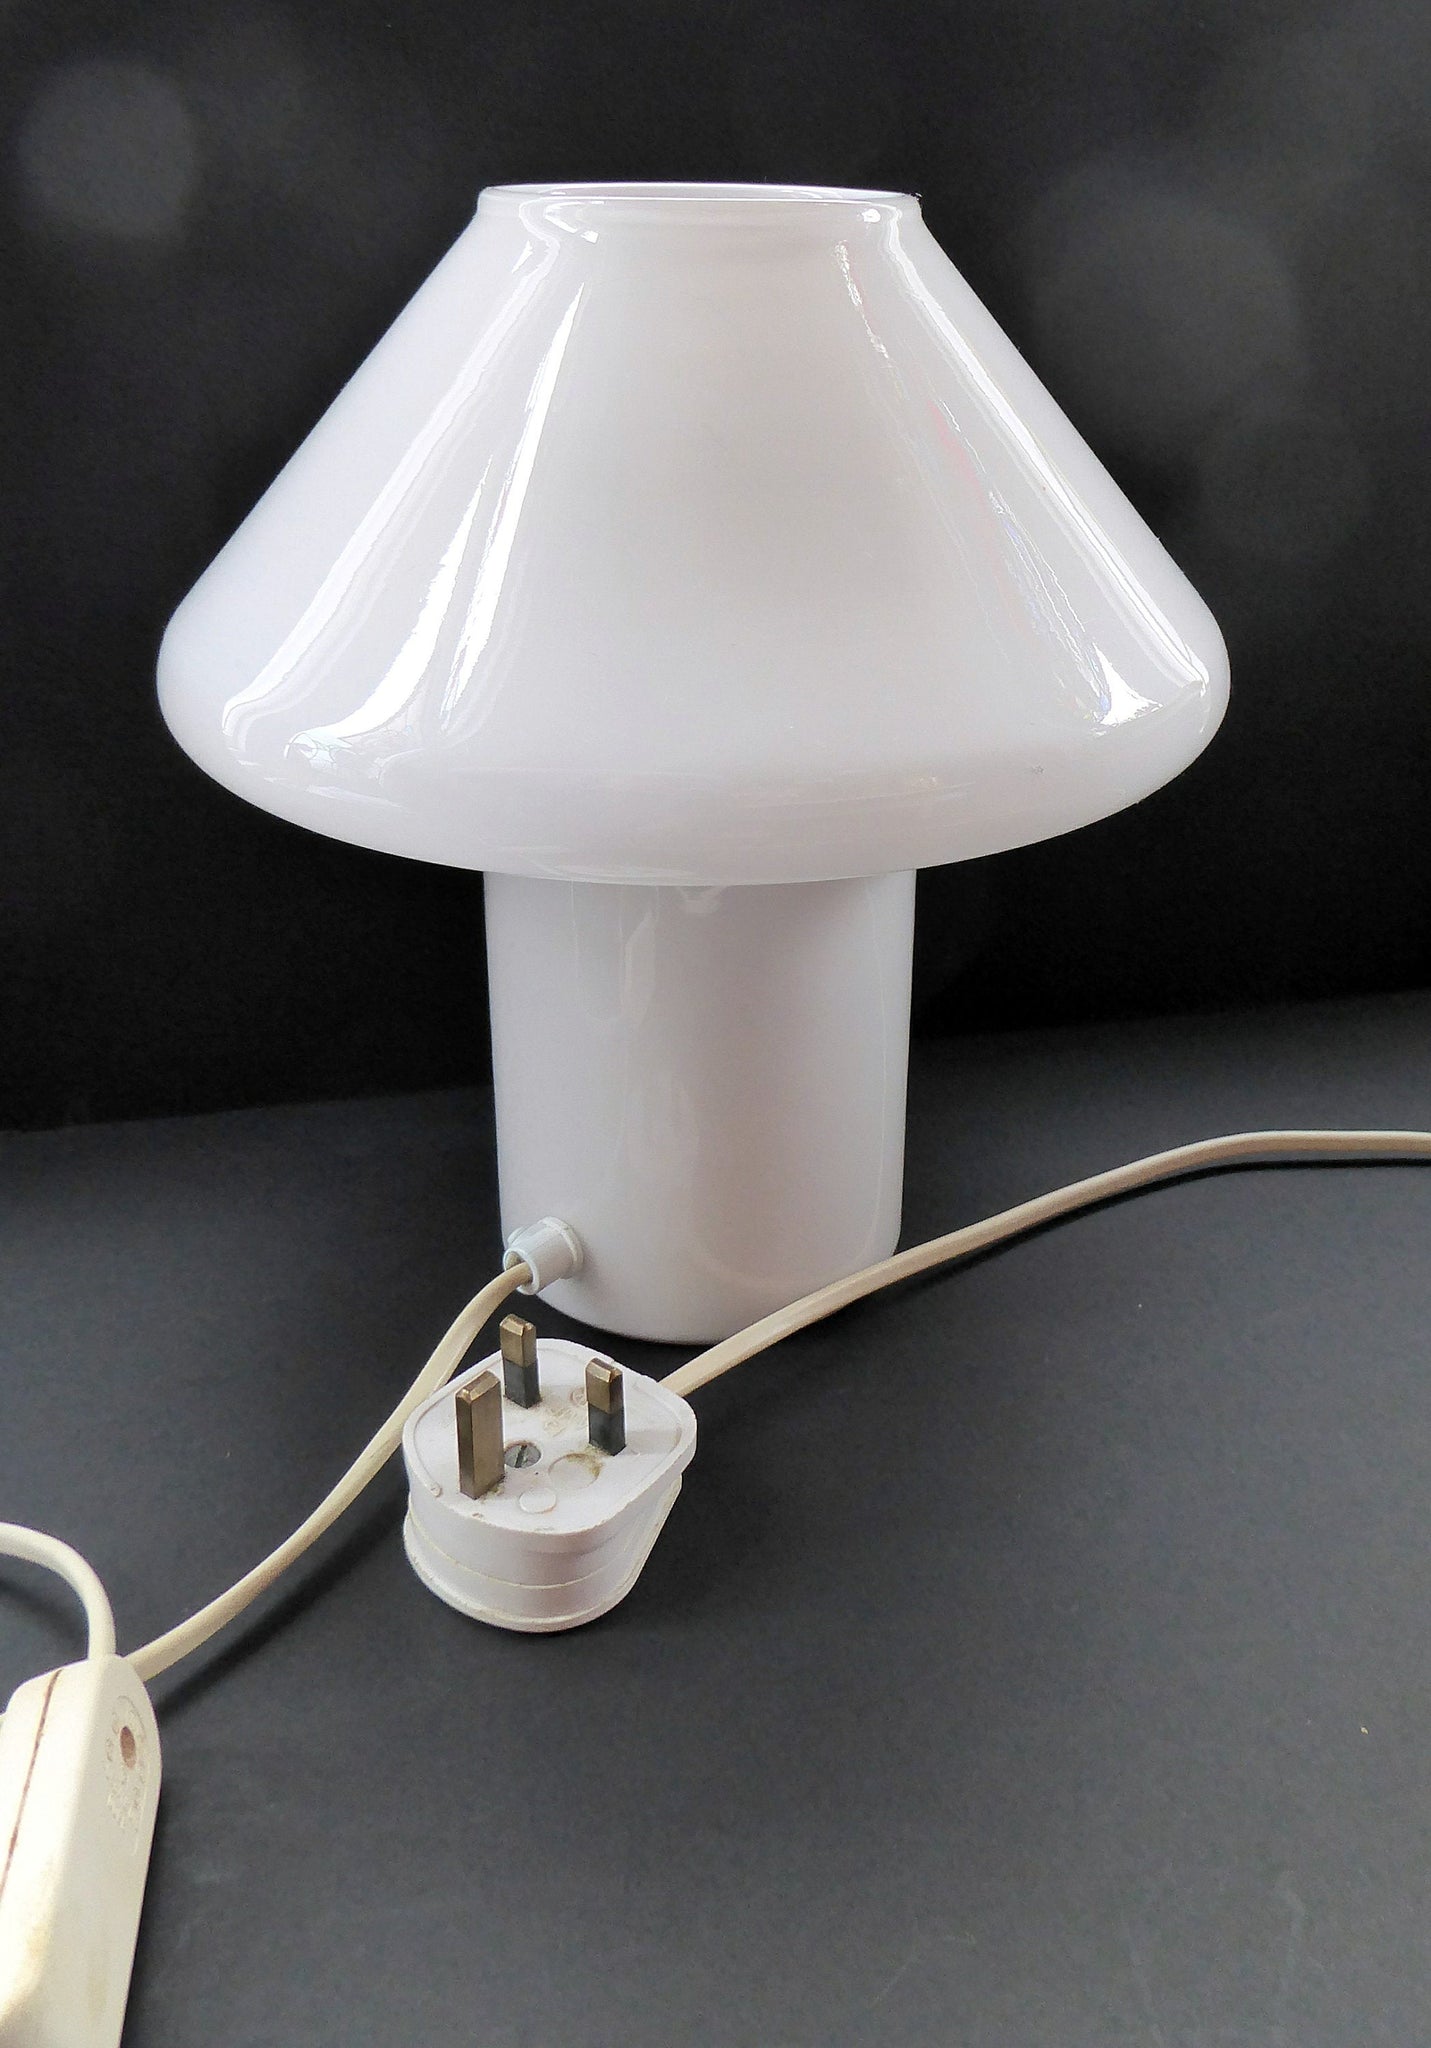 Glass Mushroom Table Lamp, White